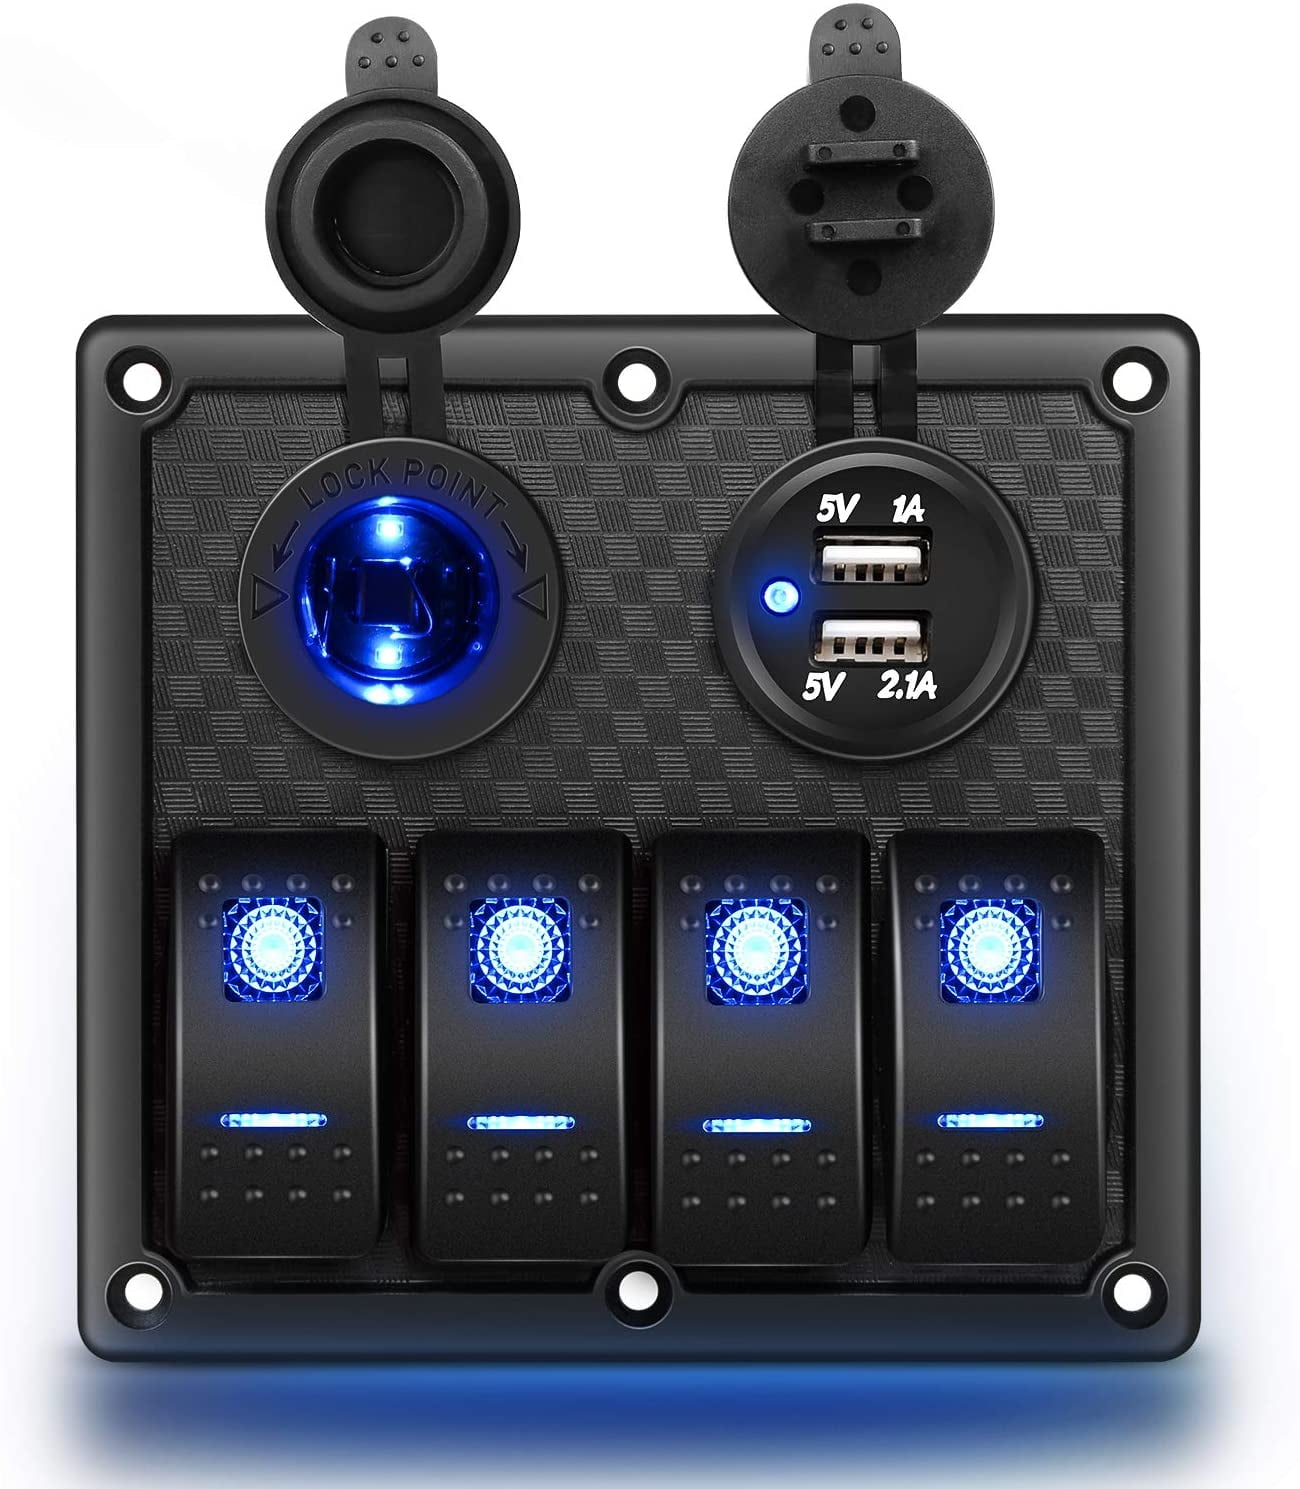 12v//24v 5 Gang LED Rocker Switch Panel for Offroad Car SUV Truck Fog Light Bar